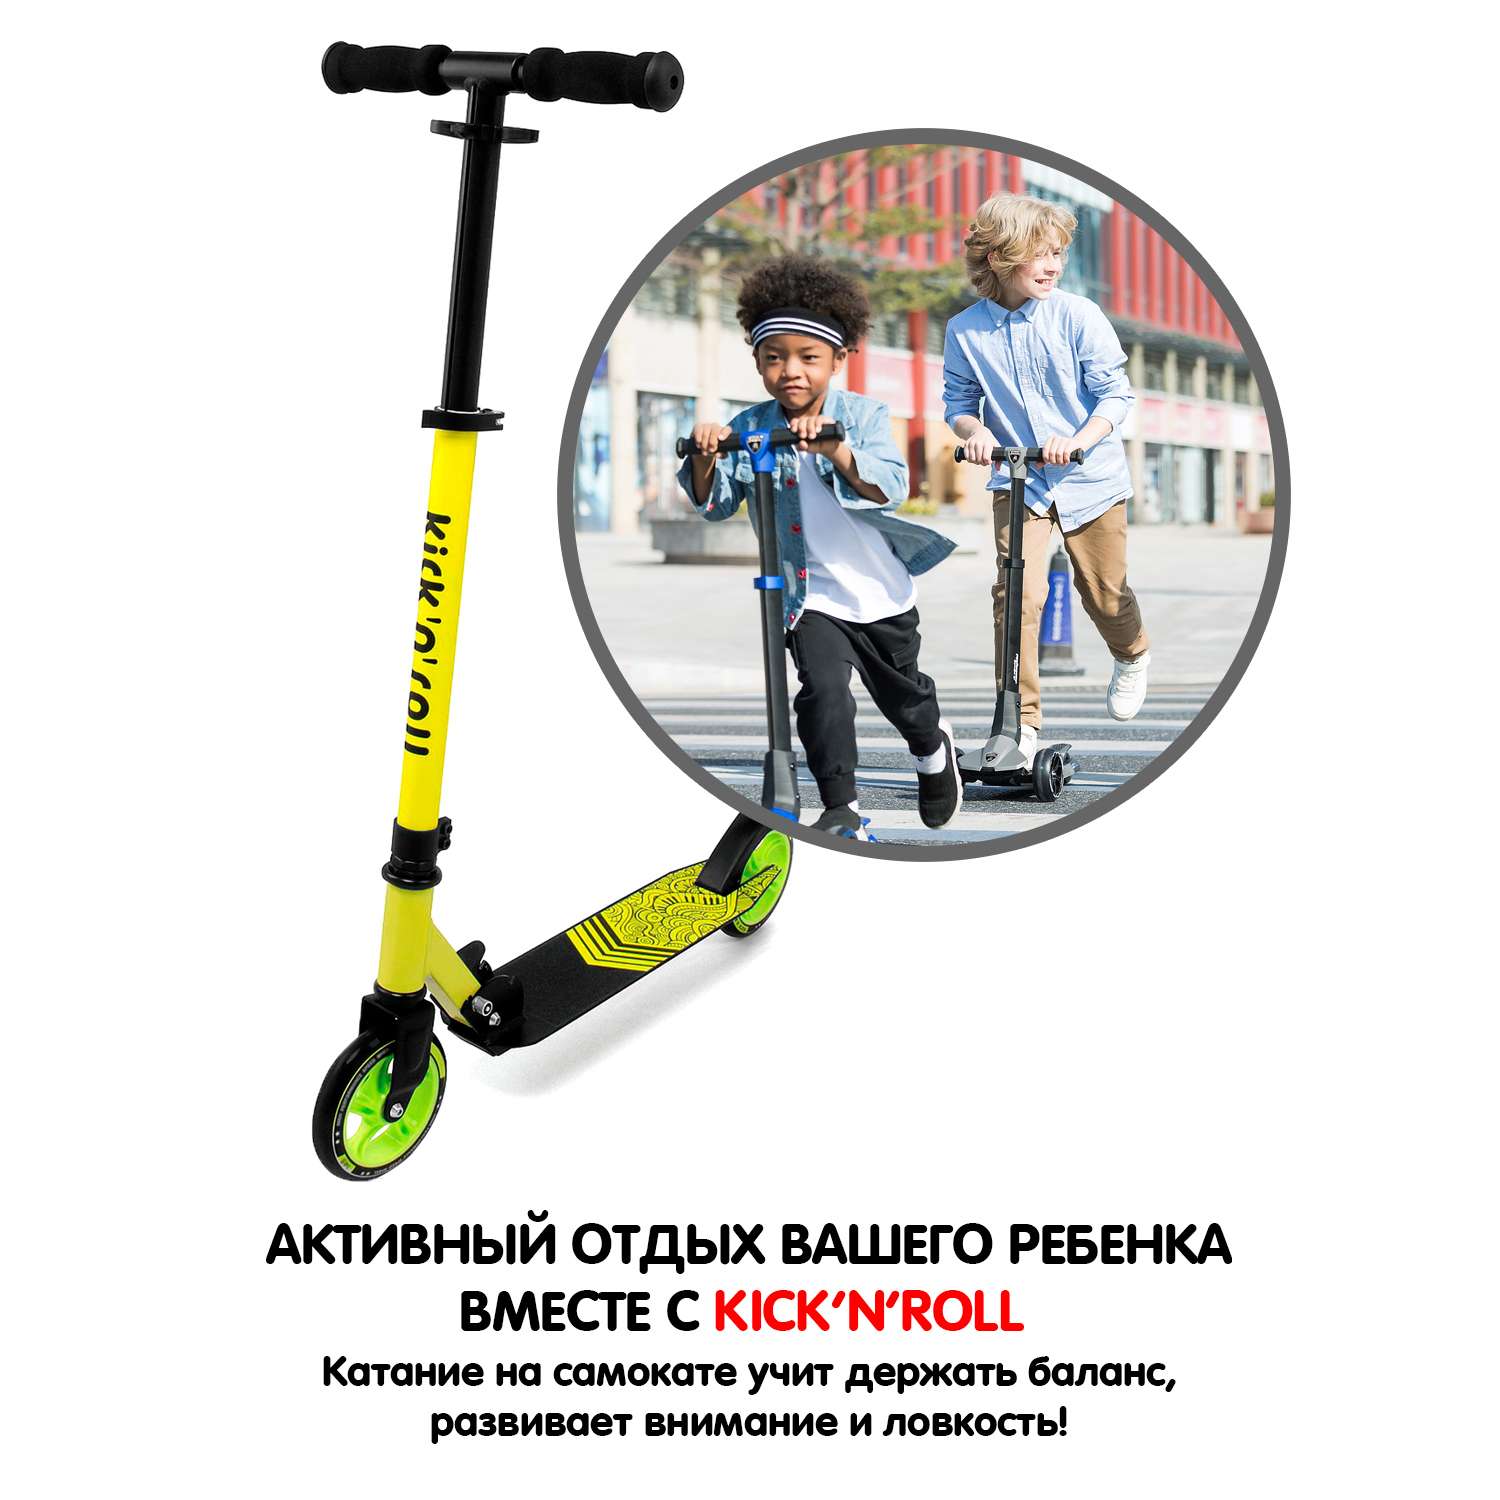 Самокат детский kick n roll складной алюминиевый чёрно-жёлтого цвета колеса 145 мм - фото 10